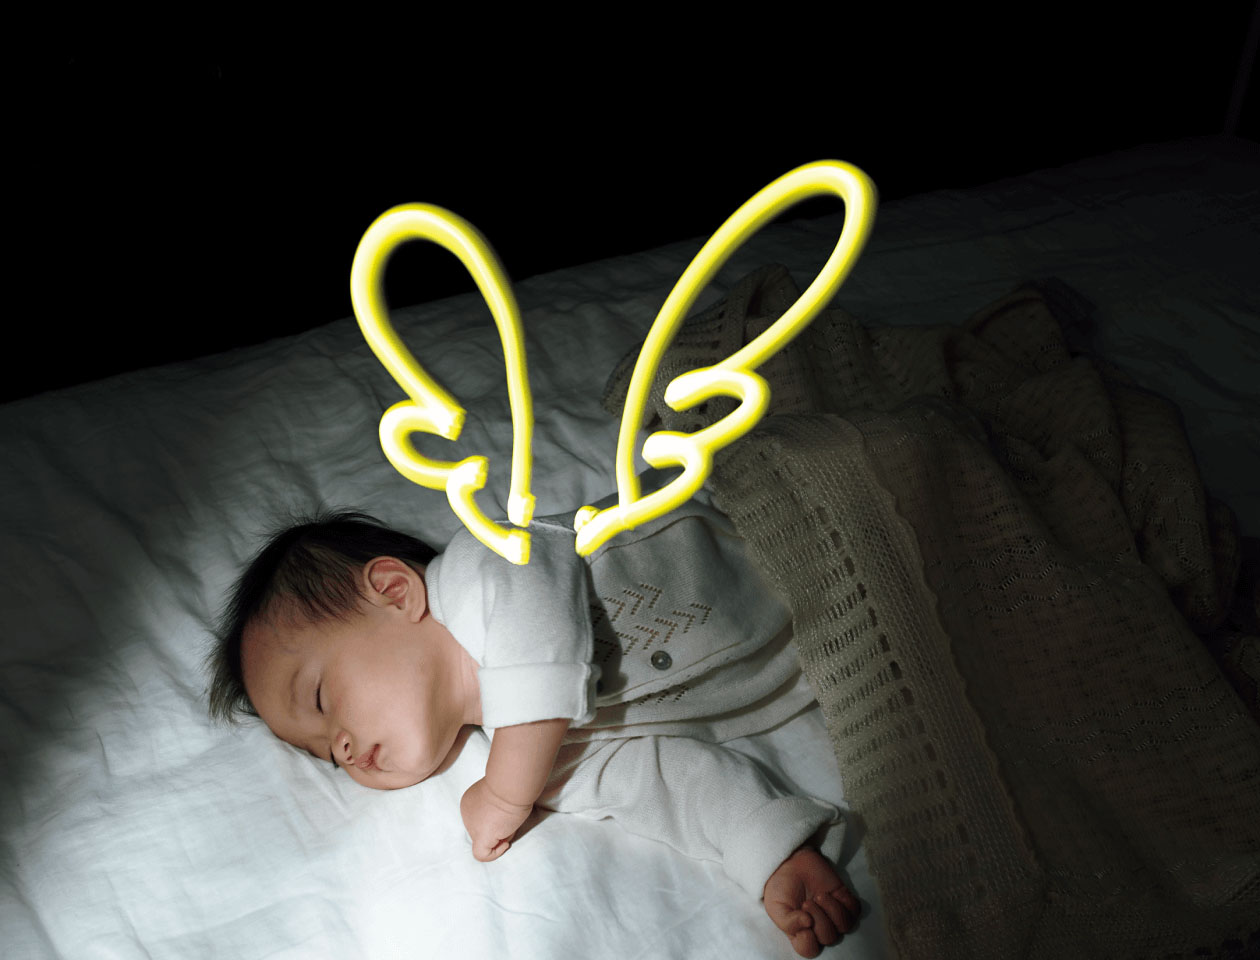 9枚中5枚目：作例写真の一部抜粋。ライブコンポジットというカメラの機能を使って撮影された写真。寝ている赤ちゃんの背中に光の線で羽が描かれている